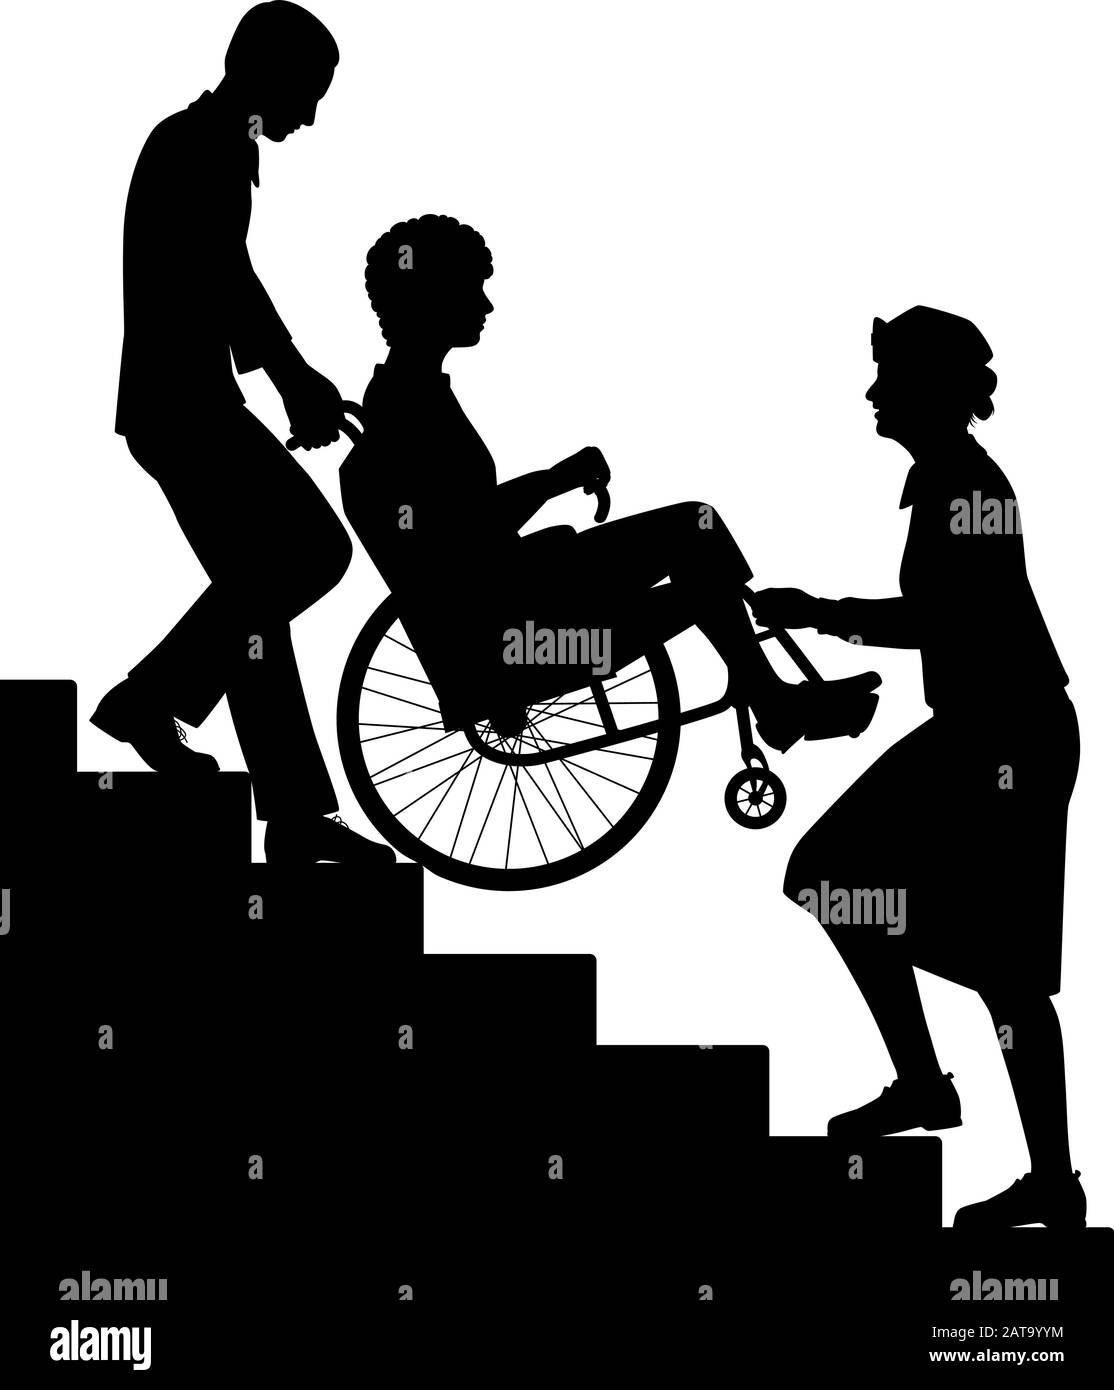 Silueta vectorial editable de dos personas que transportan a un paciente arriba en una silla de ruedas con todas las figuras como objetos separados. Ilustración del Vector